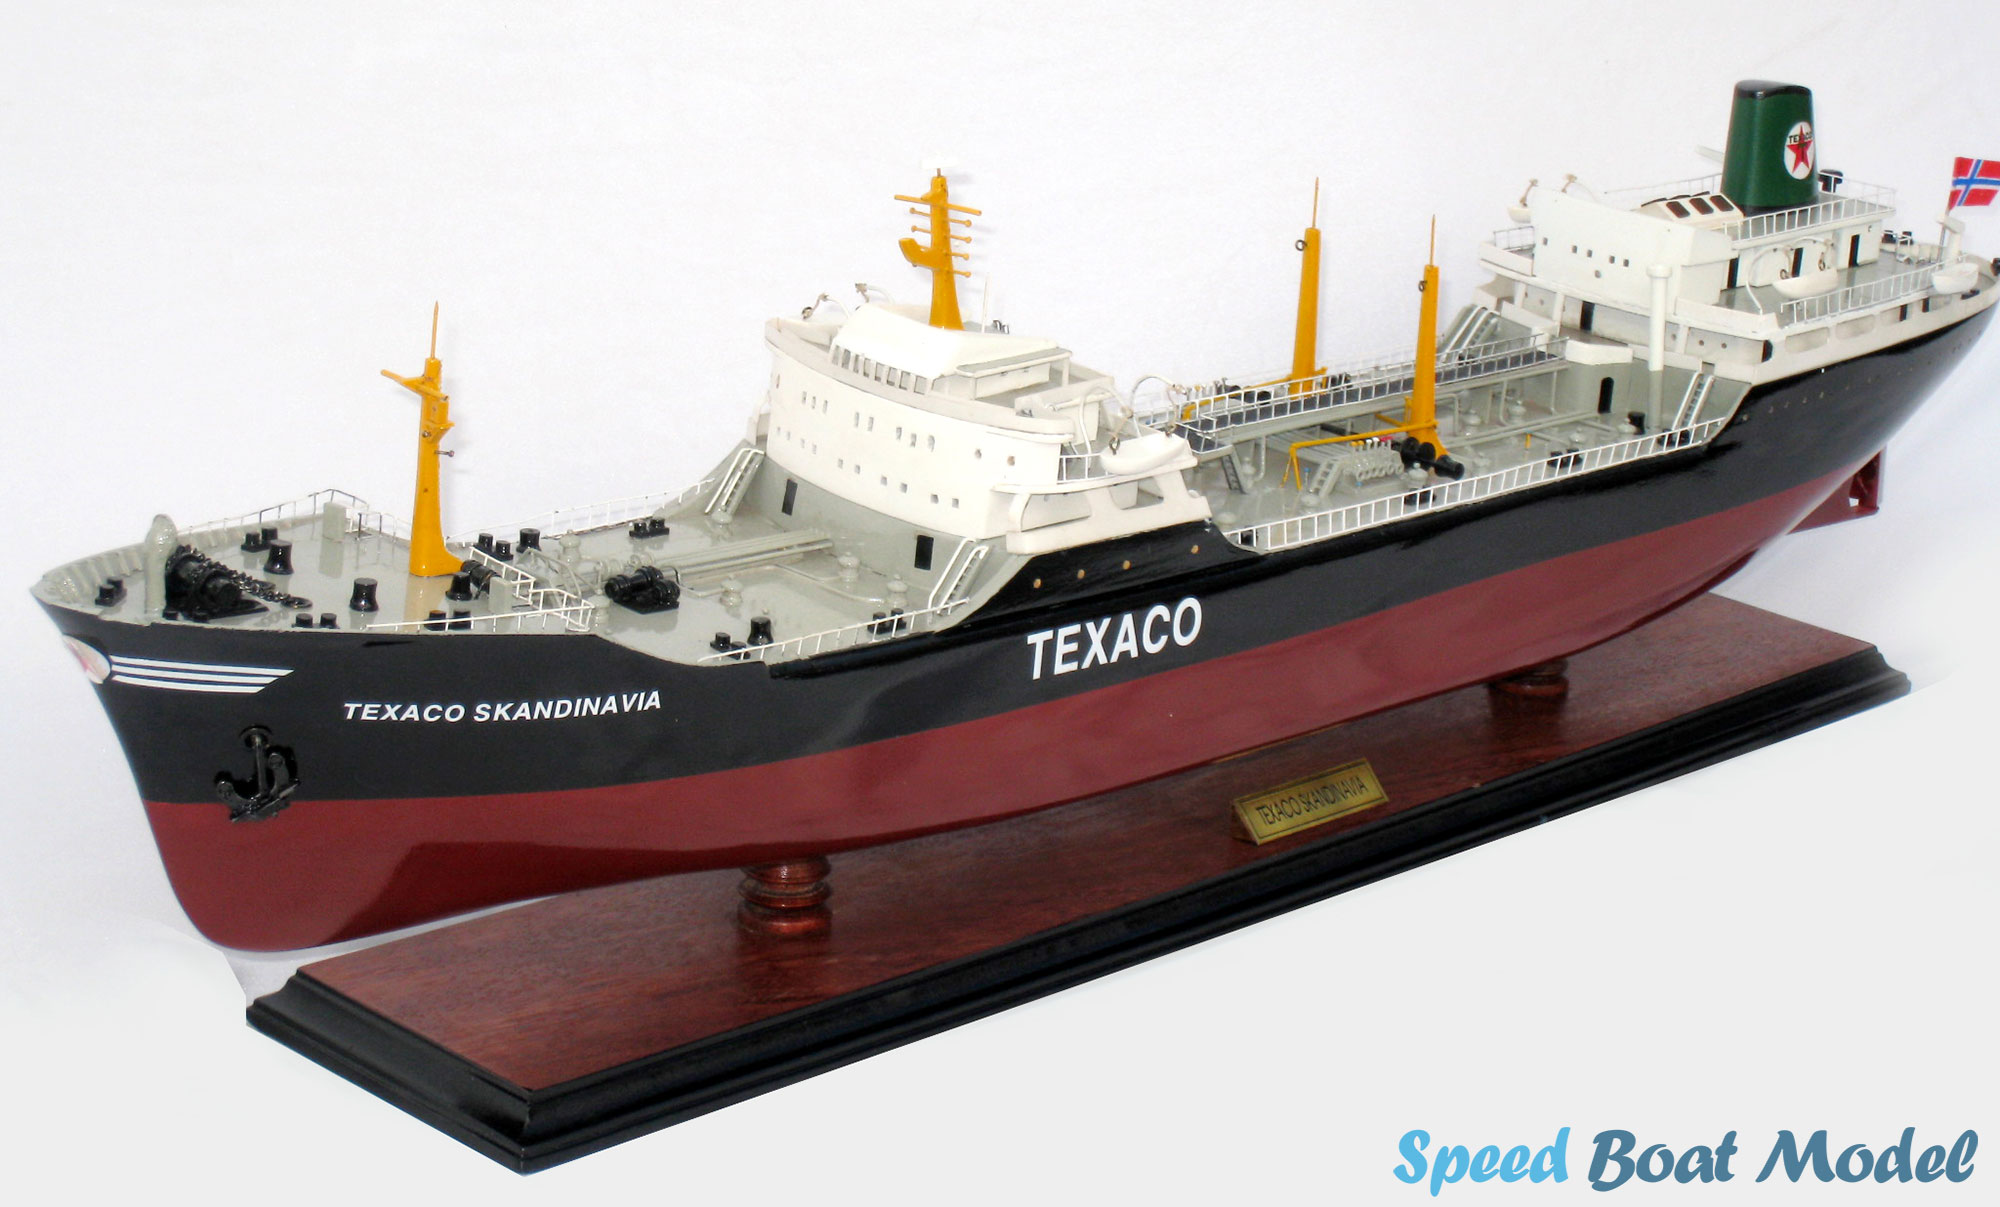 Texaco Skandinavia Commercial Ship Model 31.5"